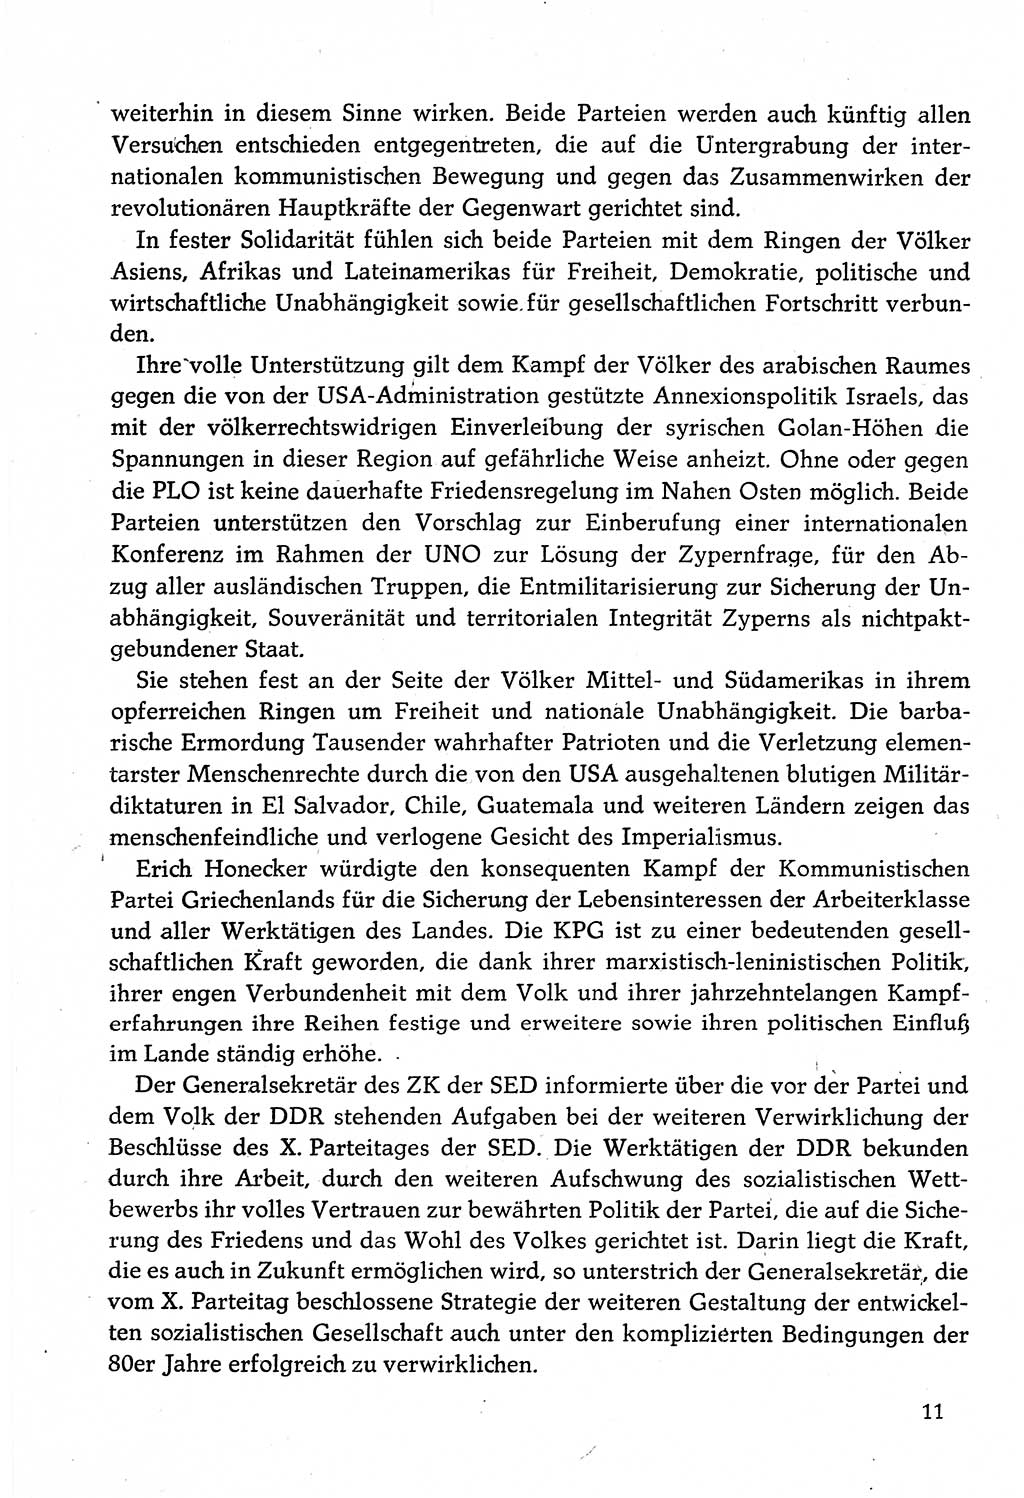 Dokumente der Sozialistischen Einheitspartei Deutschlands (SED) [Deutsche Demokratische Republik (DDR)] 1982-1983, Seite 11 (Dok. SED DDR 1982-1983, S. 11)